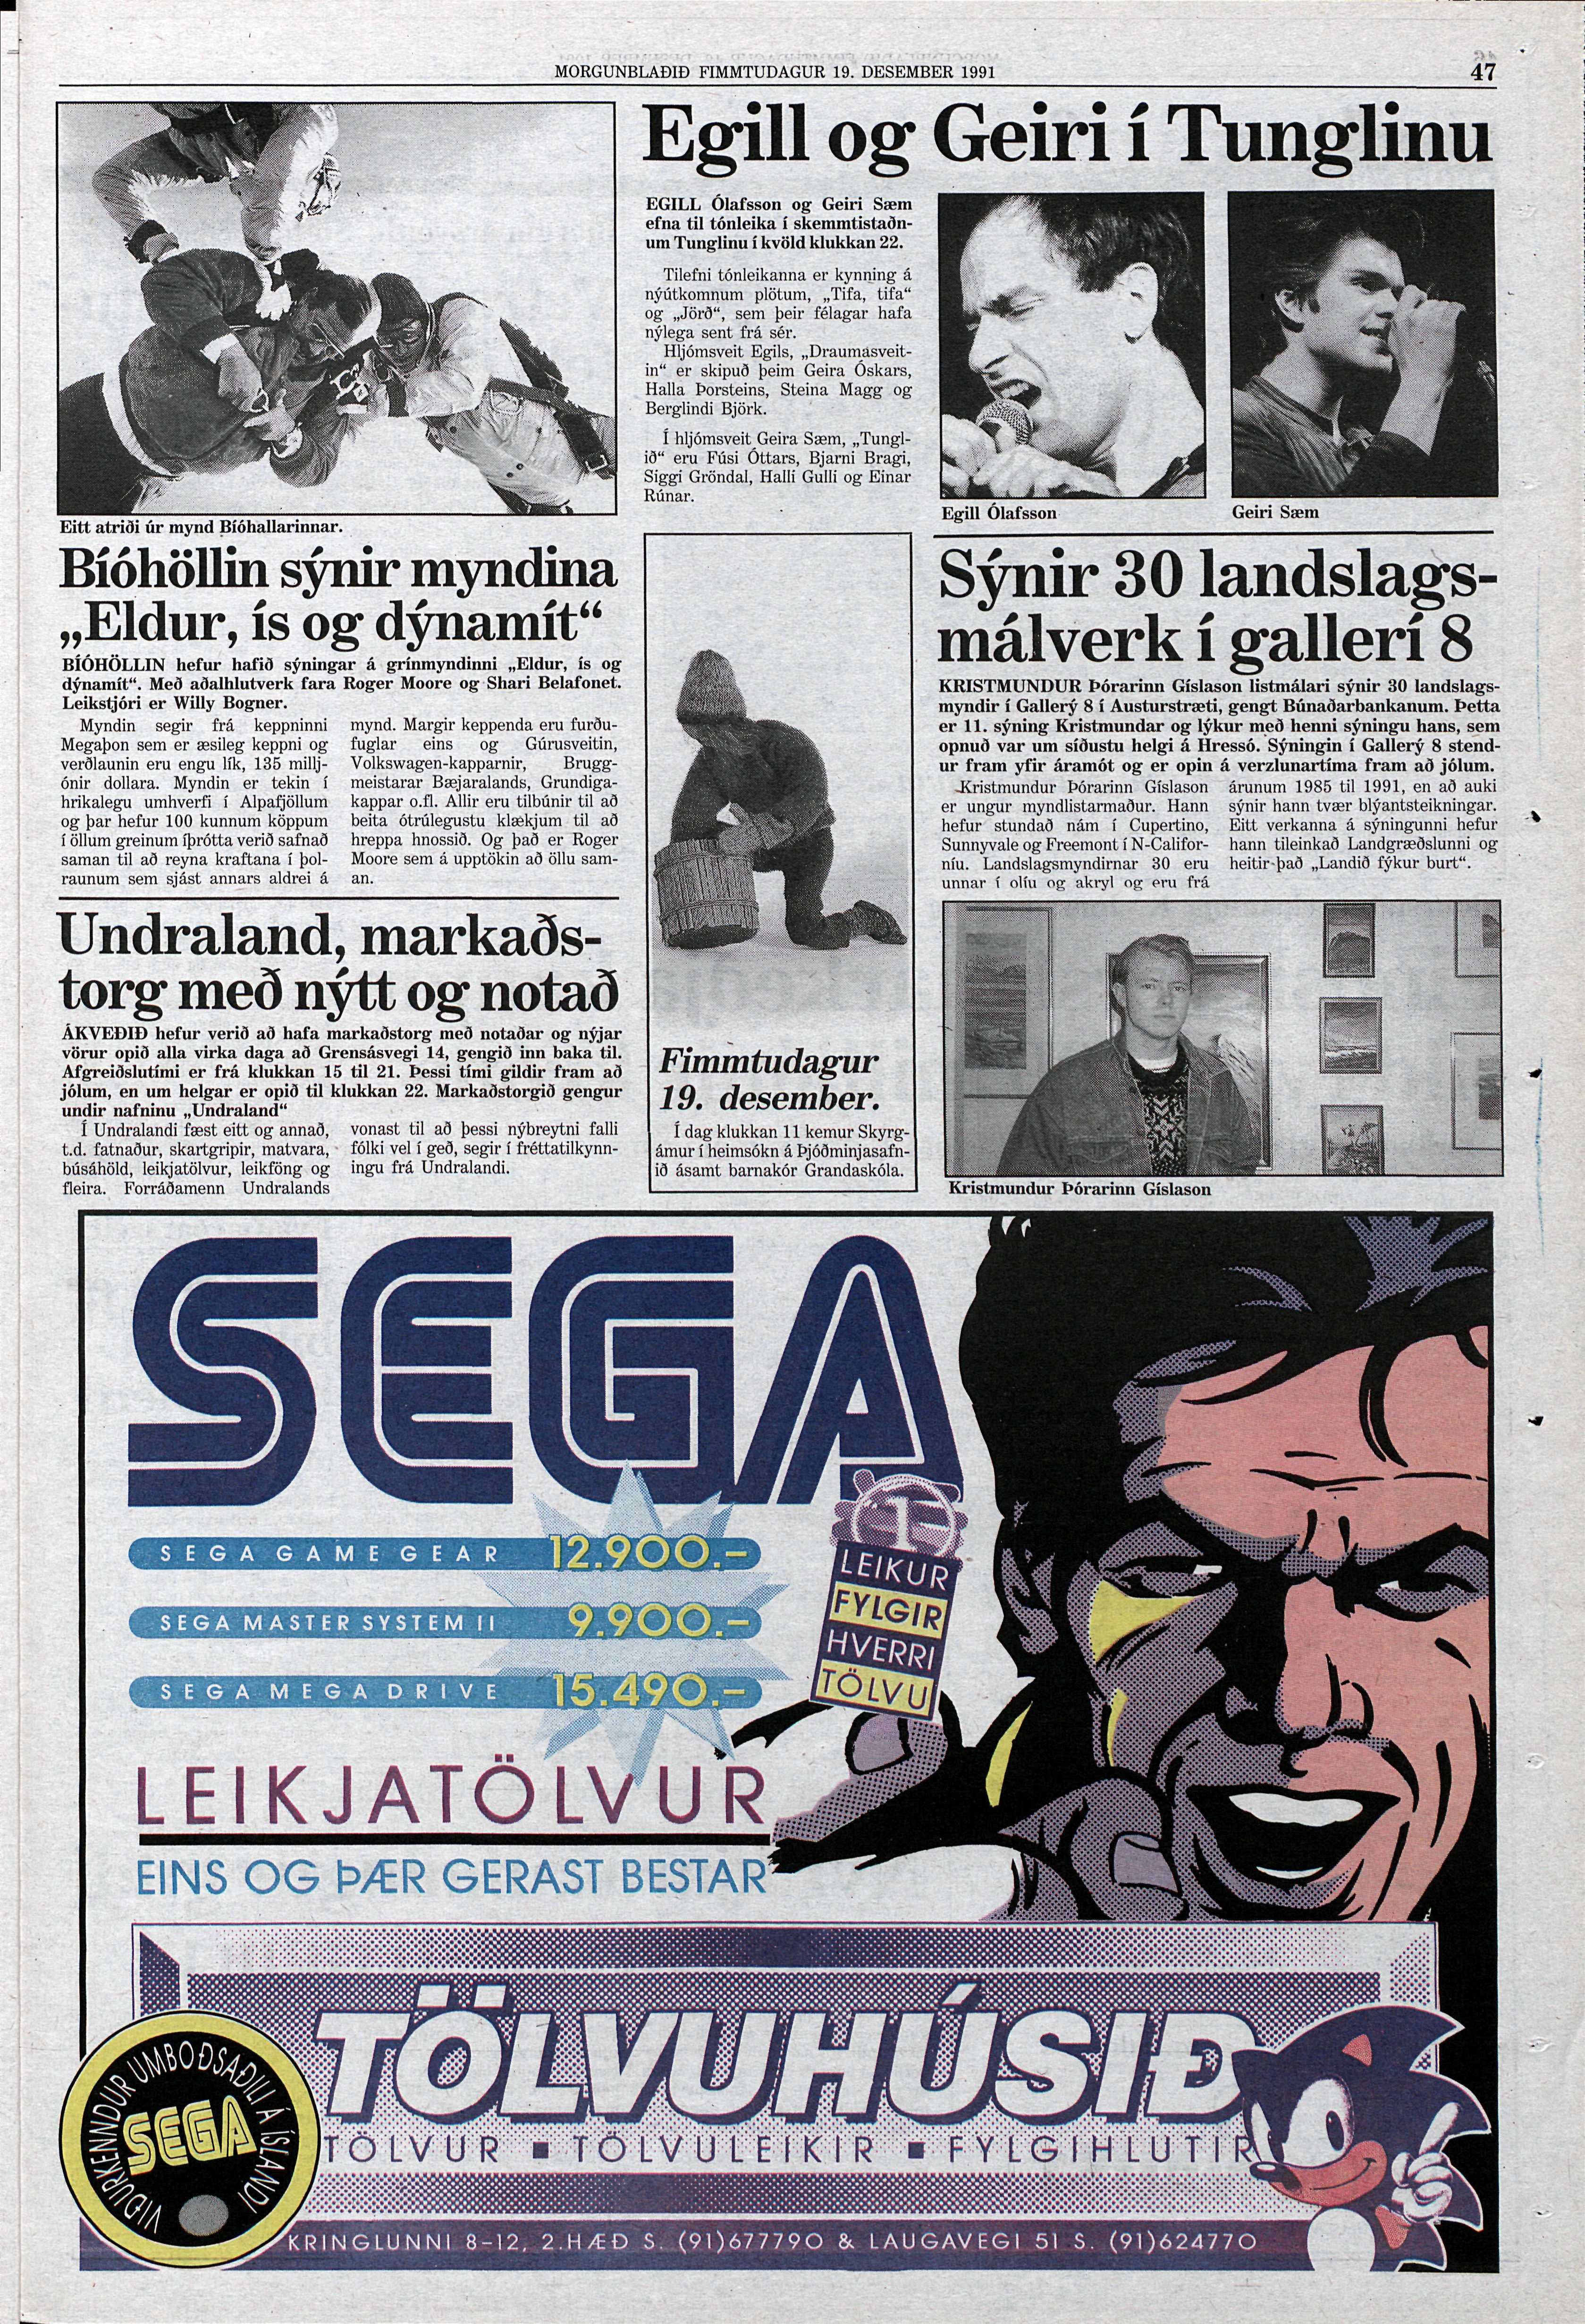 Morgunblaðið IS 1991-12-19 47.jpg